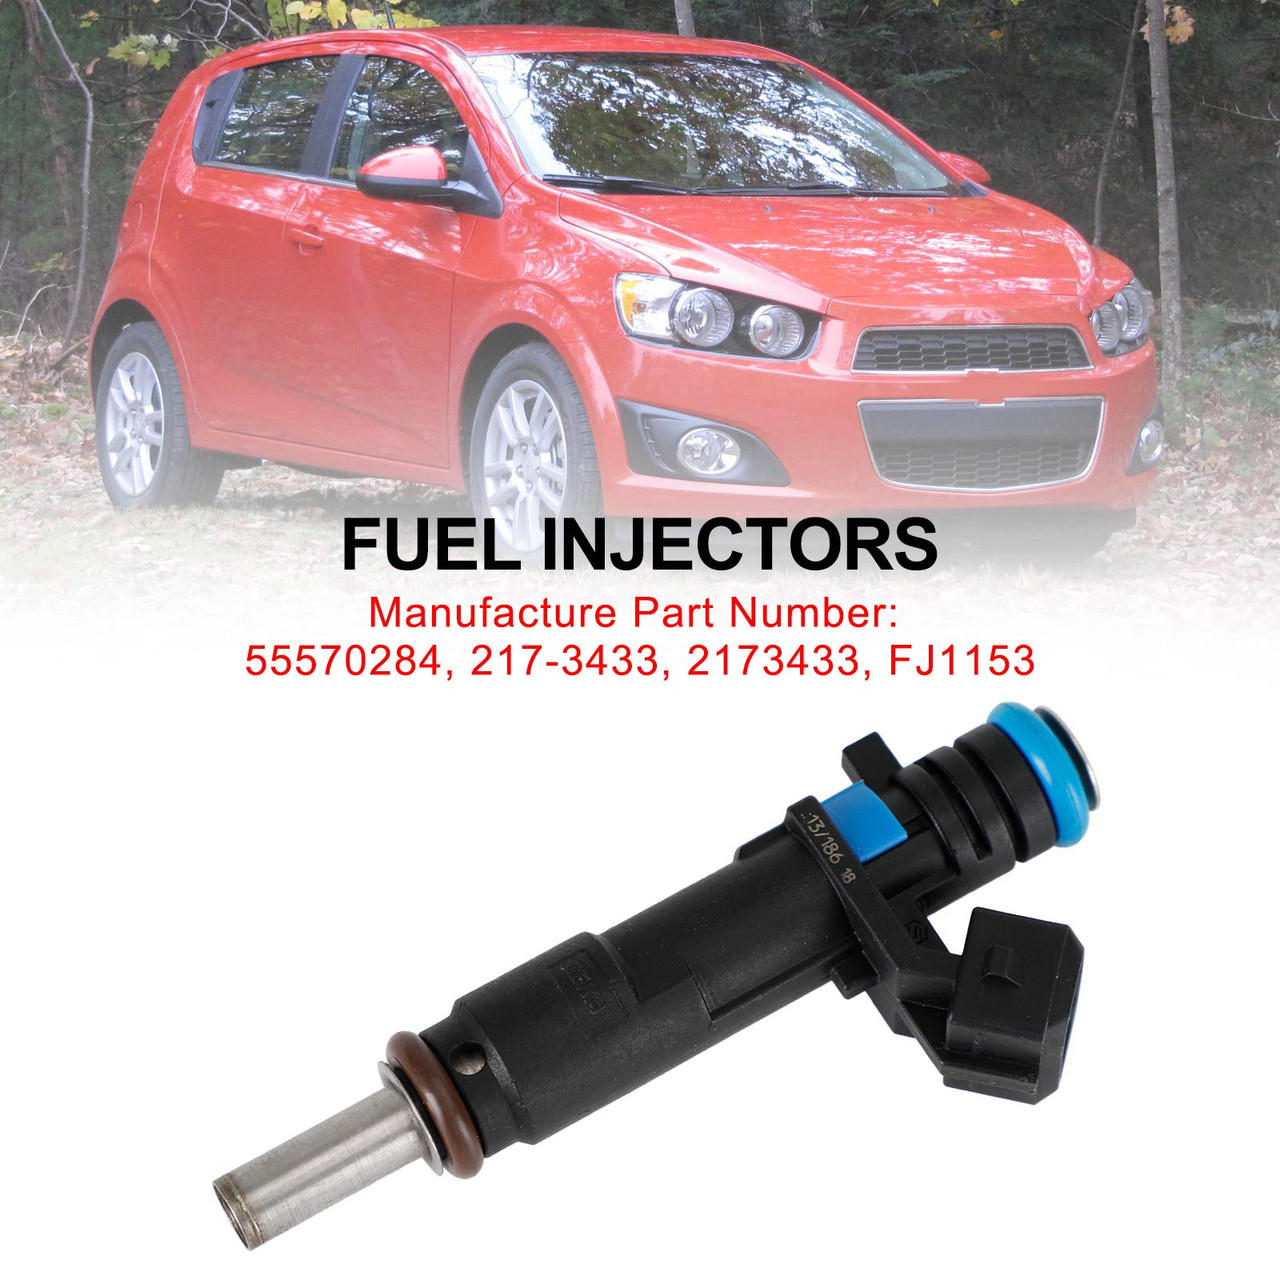 1PCS Fuel Injectors 55570284 Fit Chevrolet Cruze Sonic 1.8L 2011-2015 217-3433